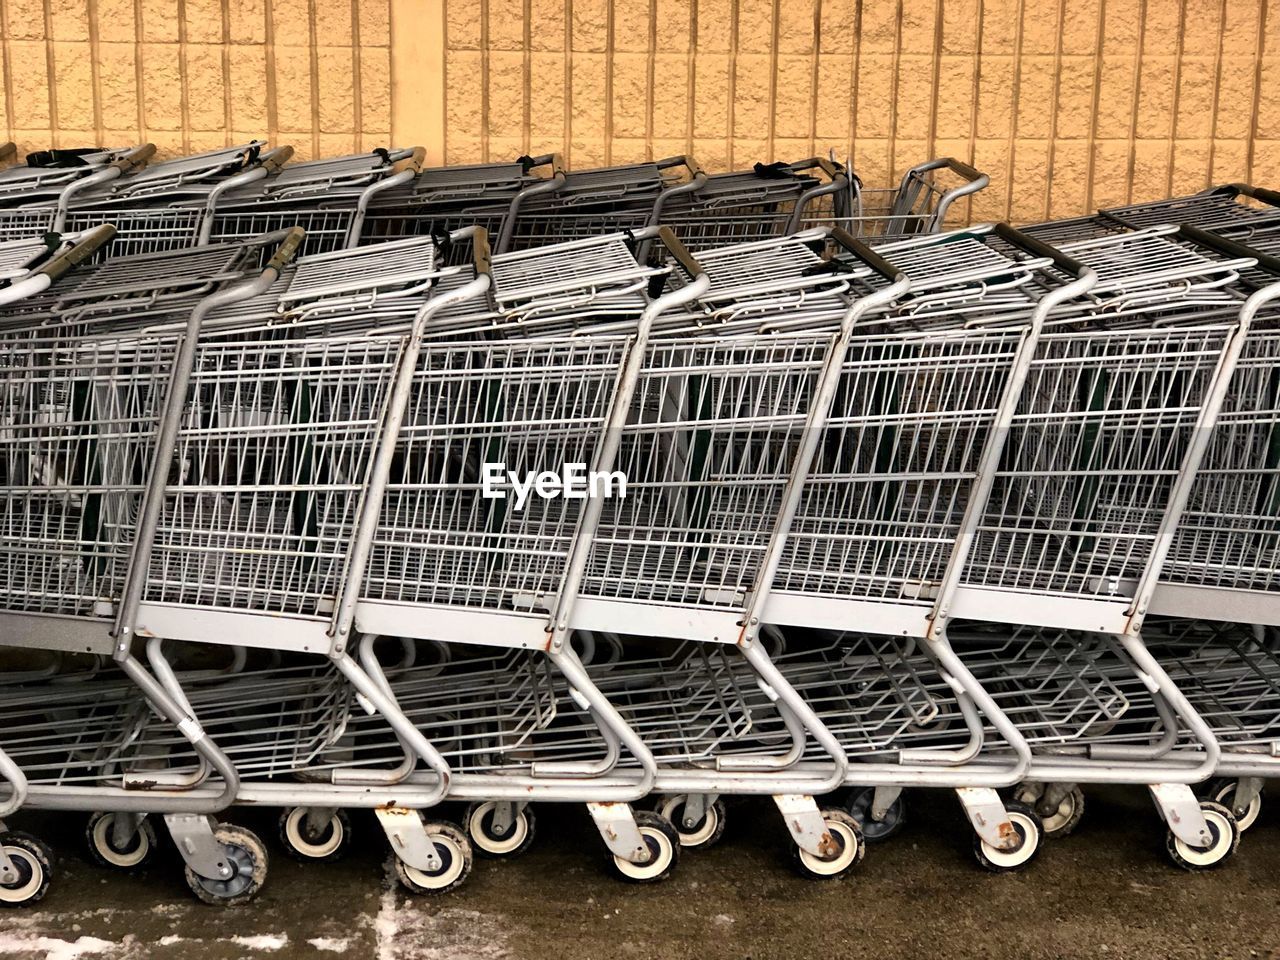 Close-up of shopping carts